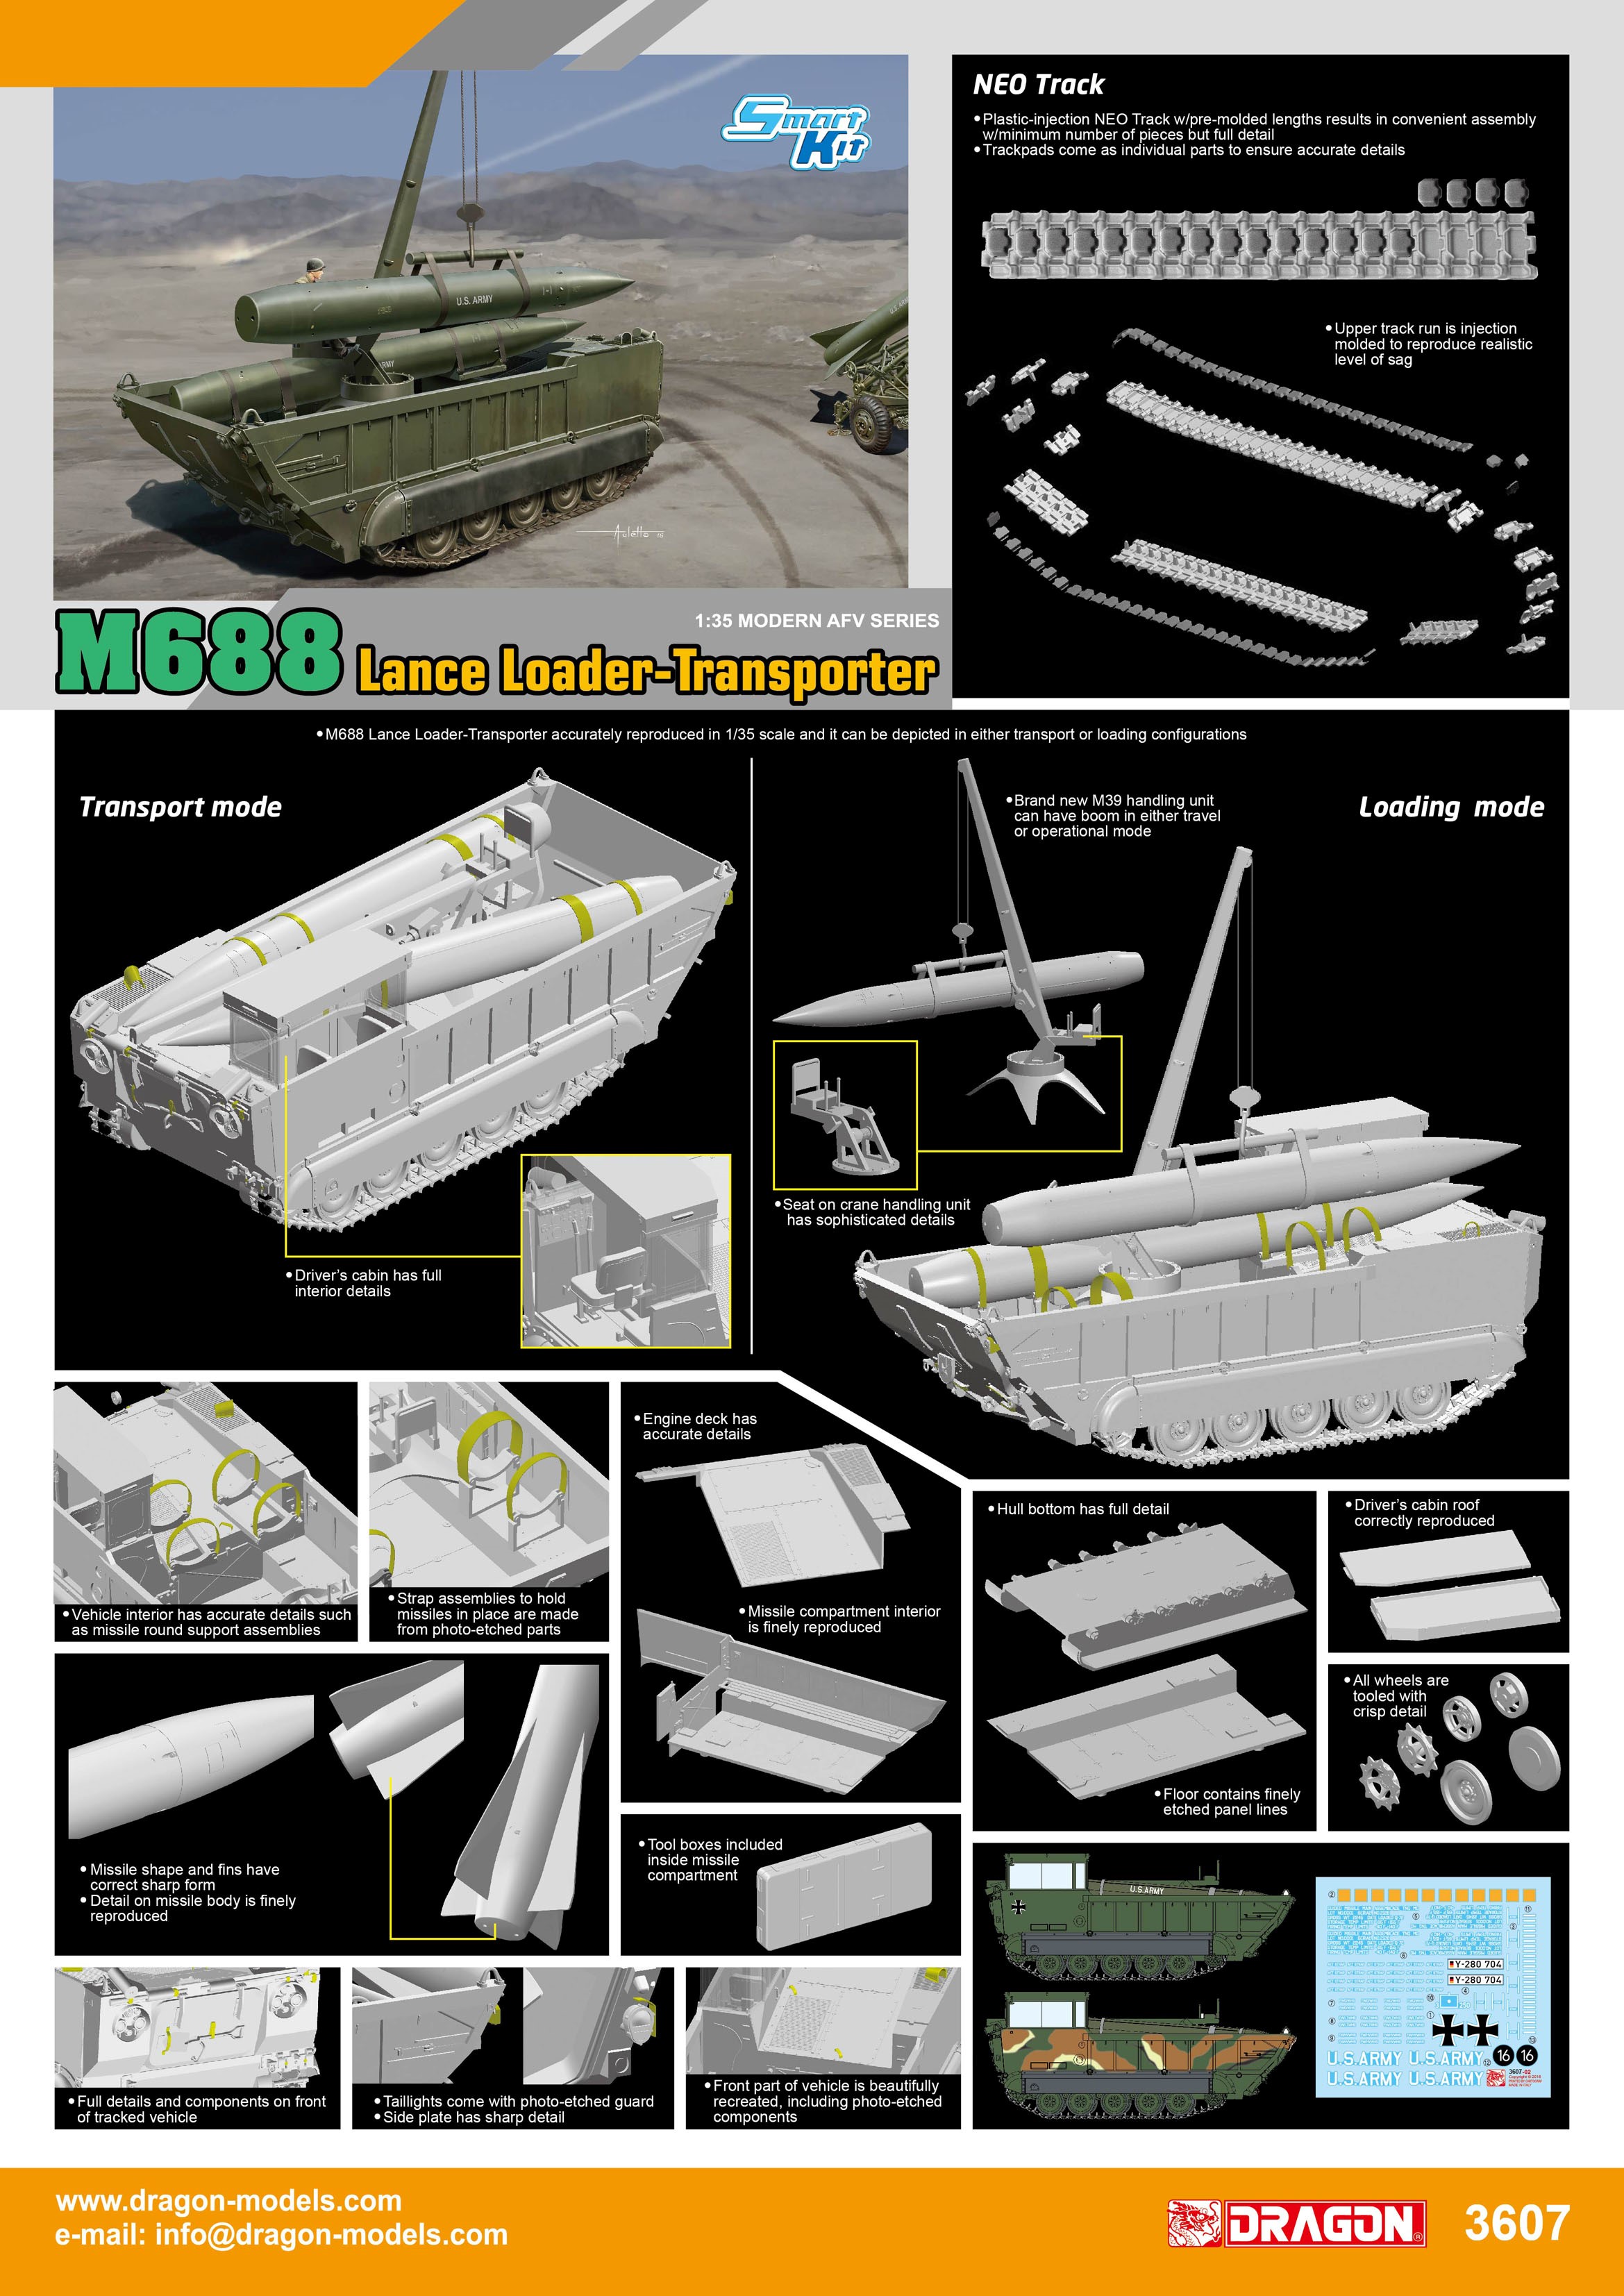 3607 - 1/35 M688 Lance Loader-Transporter - Dragon Plastic Model Kits